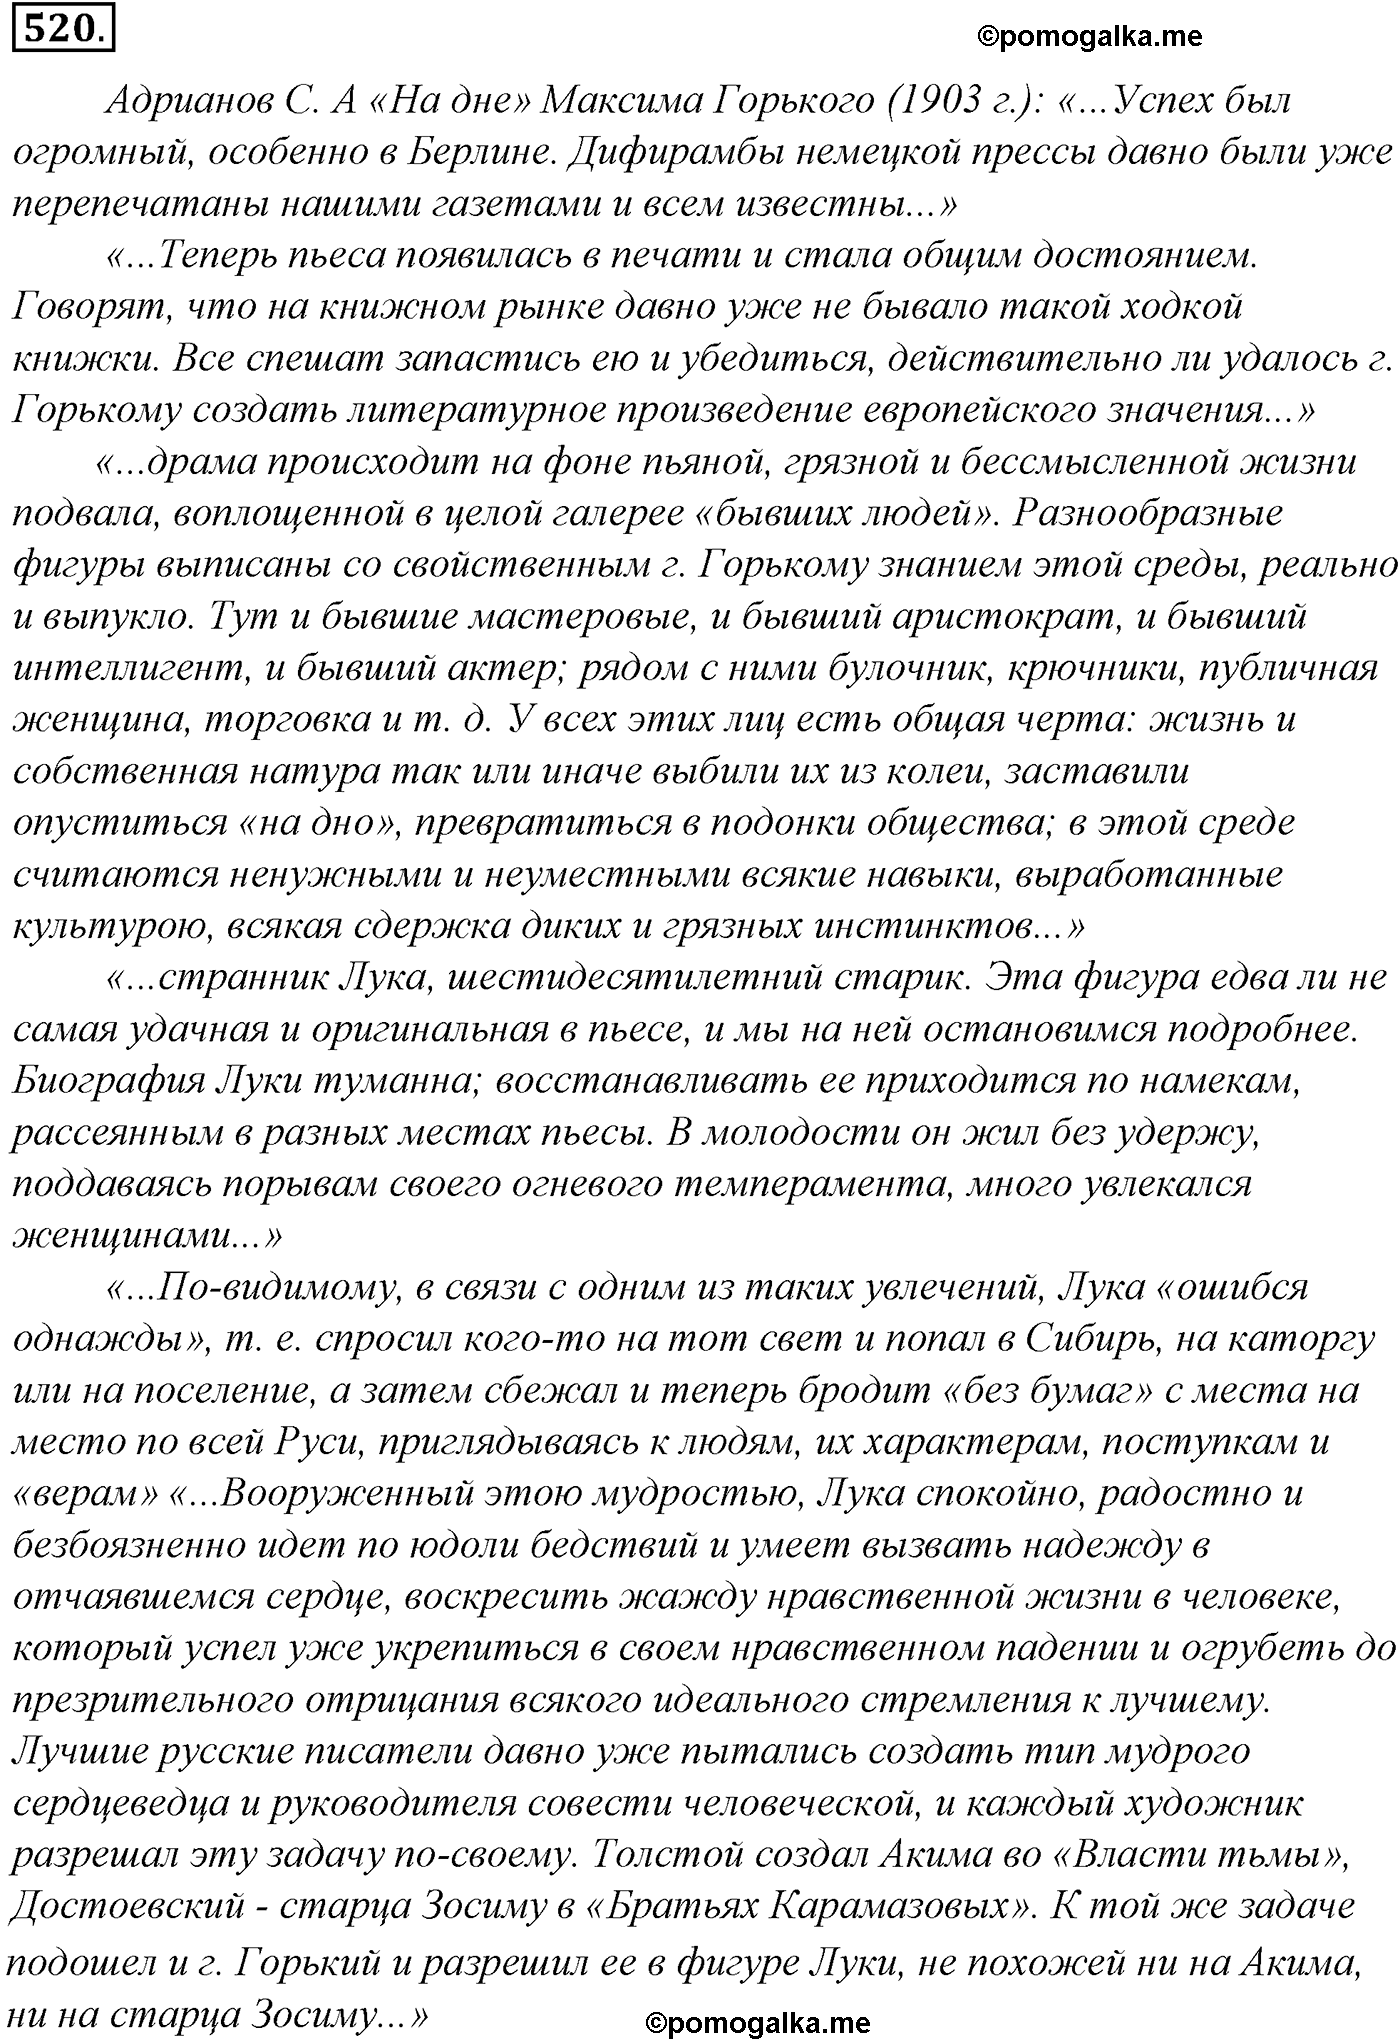 упражнение №520 русский язык 10-11 класс Гольцова